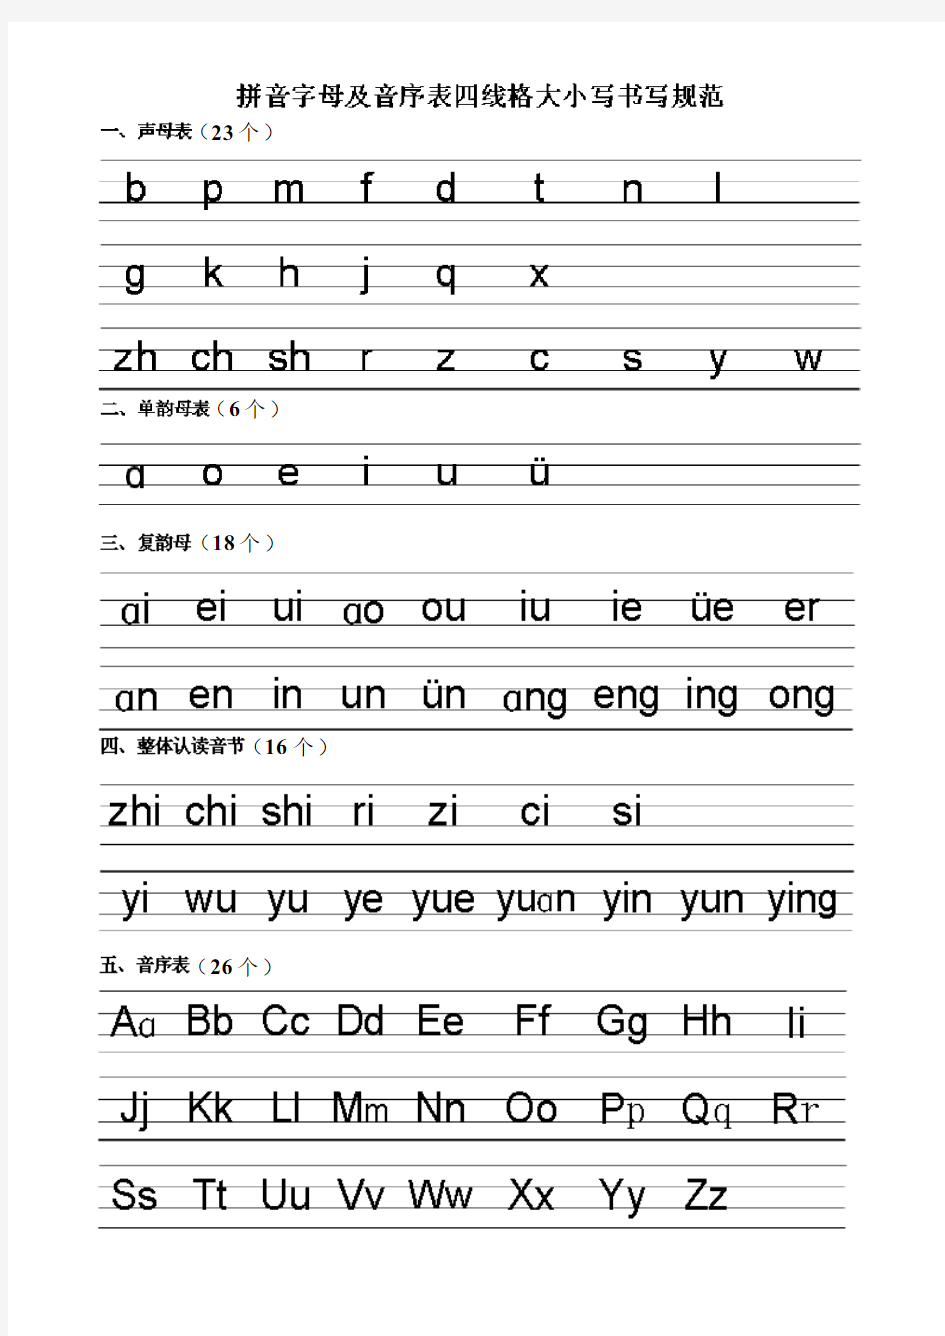 拼音字母及音序表(可直接打印)